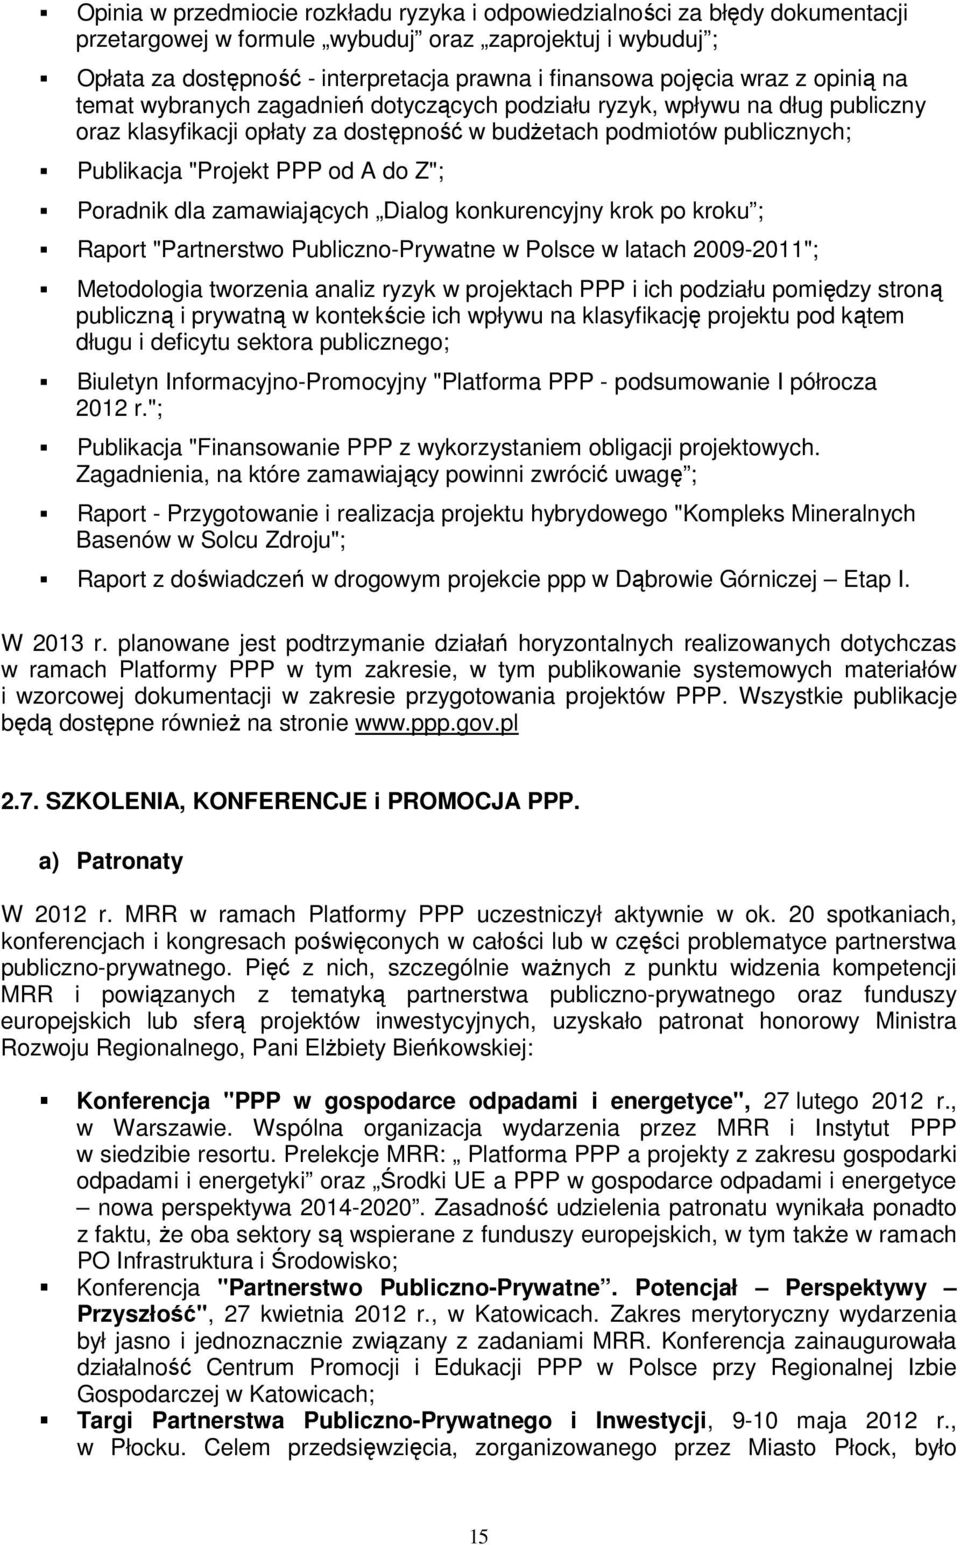 PPP od A do Z"; Poradnik dla zamawiających Dialog konkurencyjny krok po kroku ; Raport "Partnerstwo Publiczno-Prywatne w Polsce w latach 2009-2011"; Metodologia tworzenia analiz ryzyk w projektach